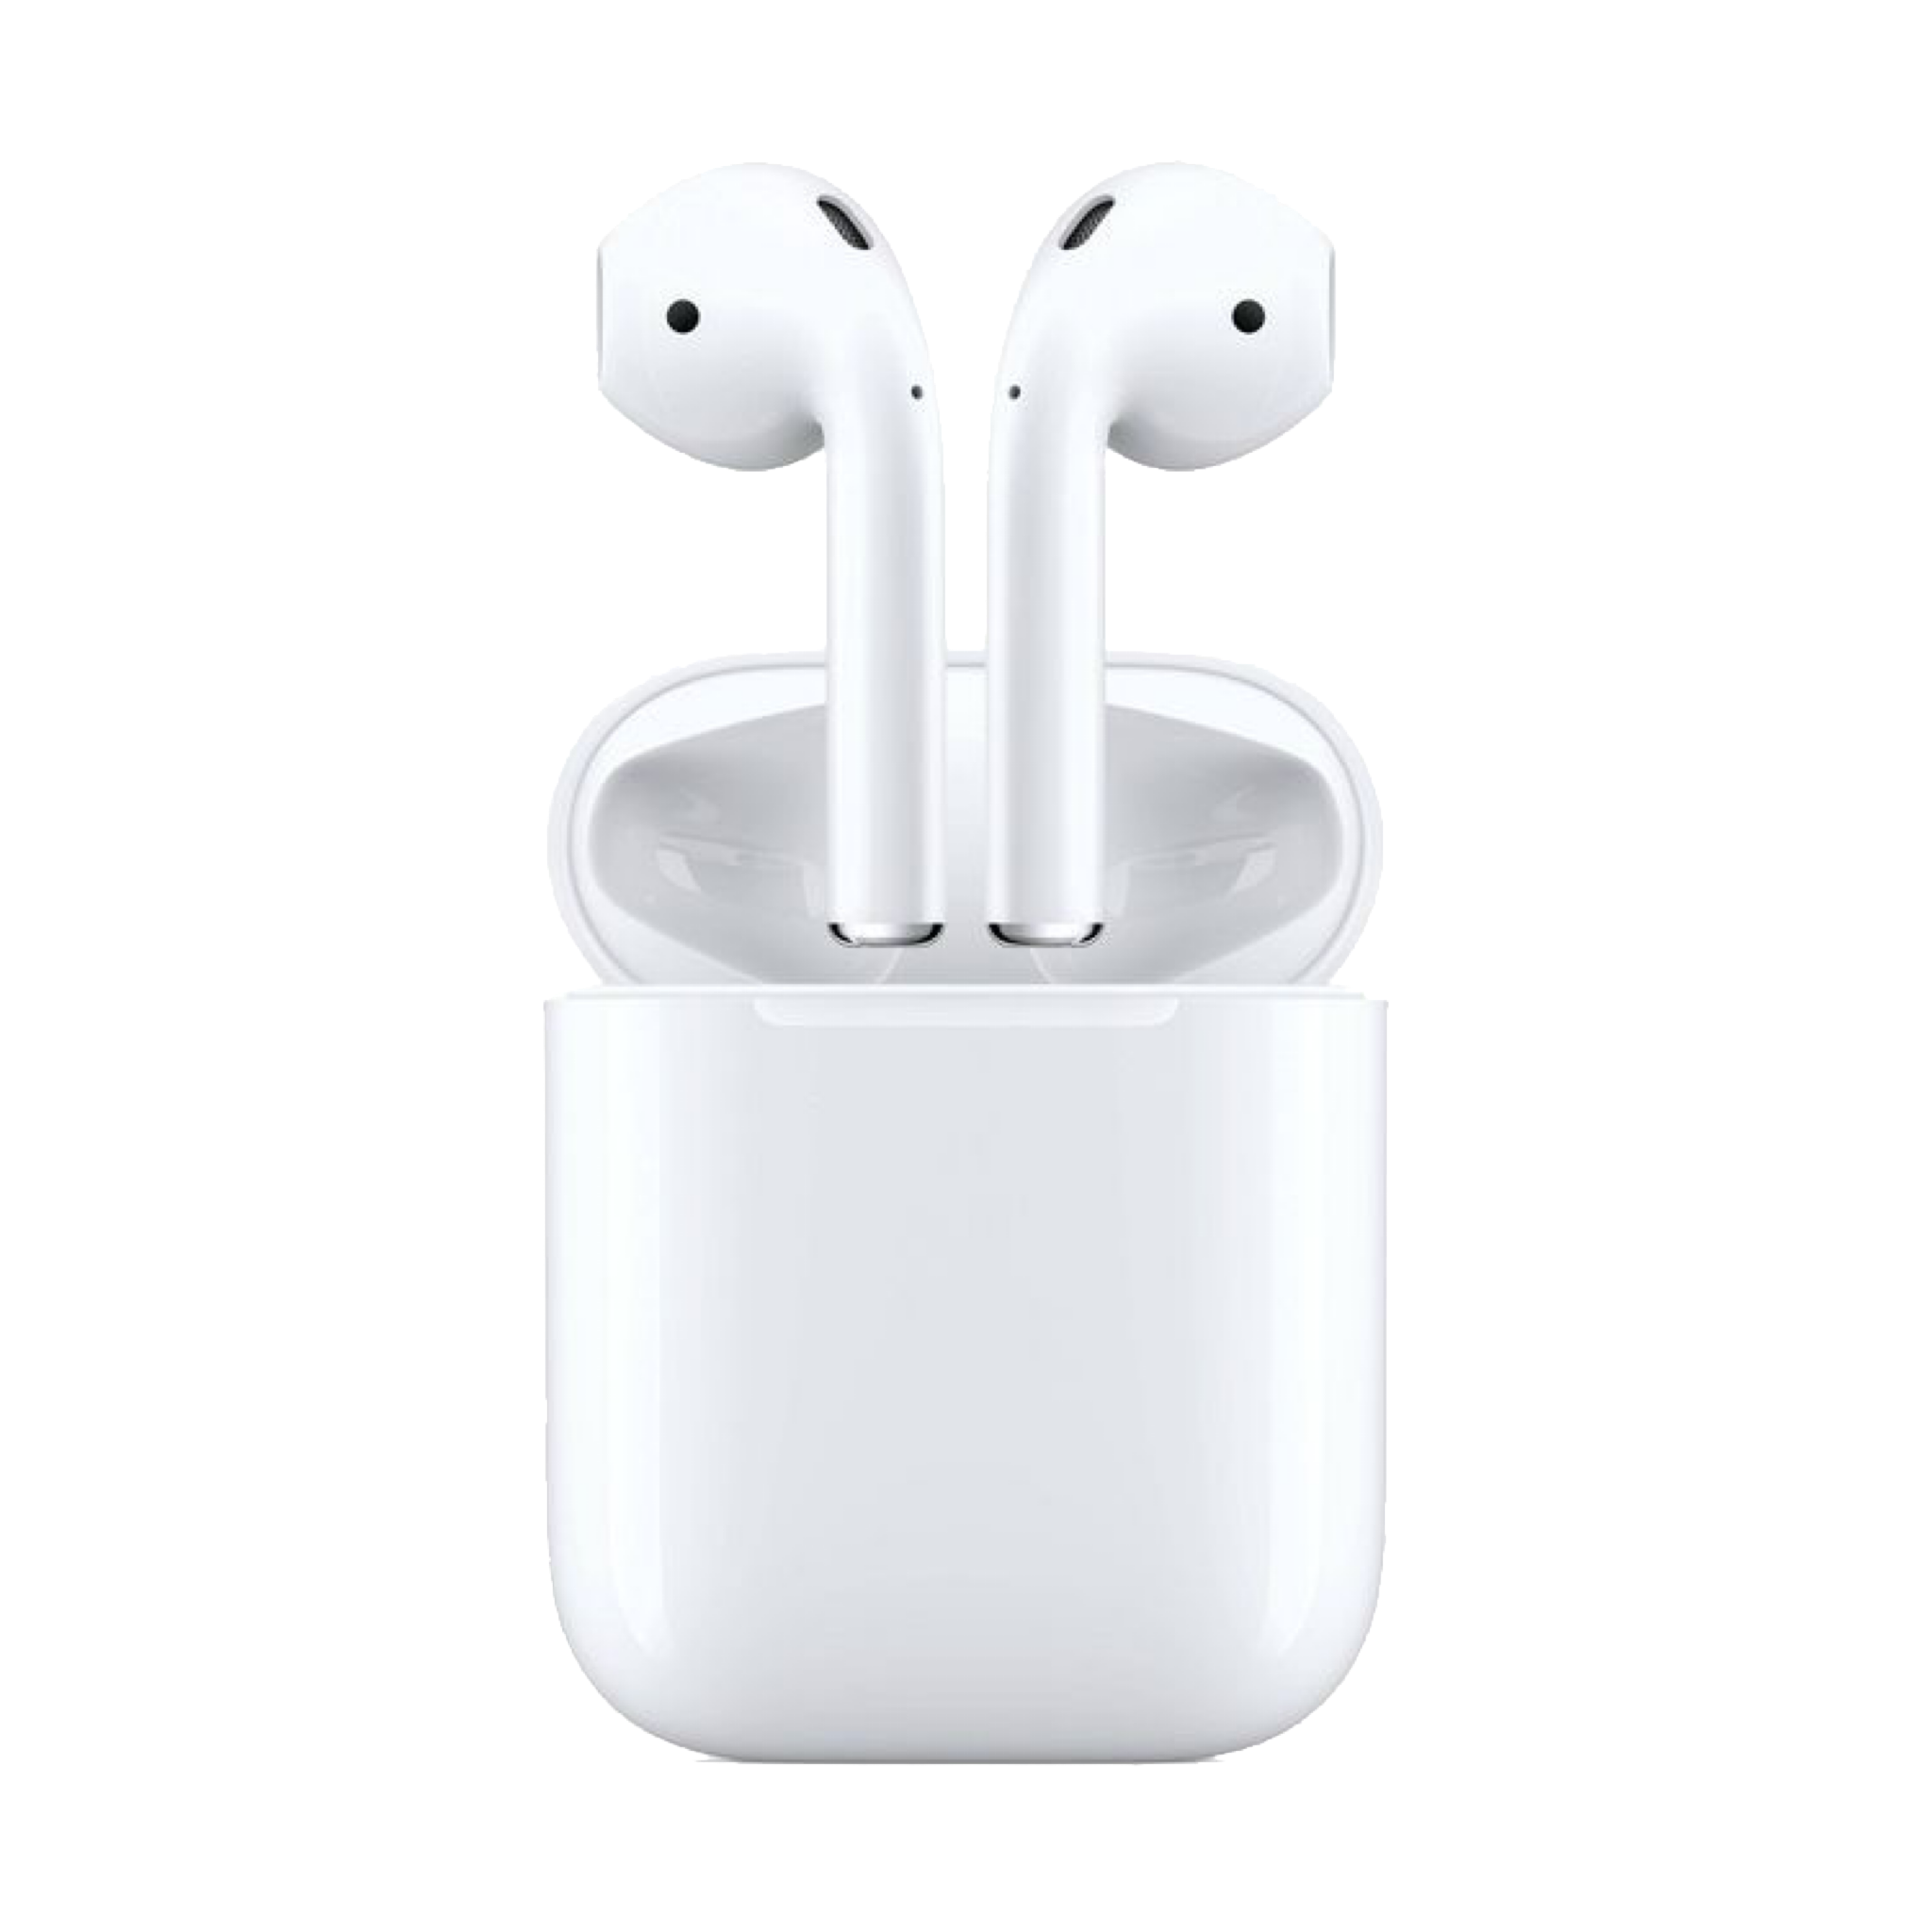 Airpods Apple Product Sticker By ˏˋʎlloɯ ɯi Iɥ ˊˎ